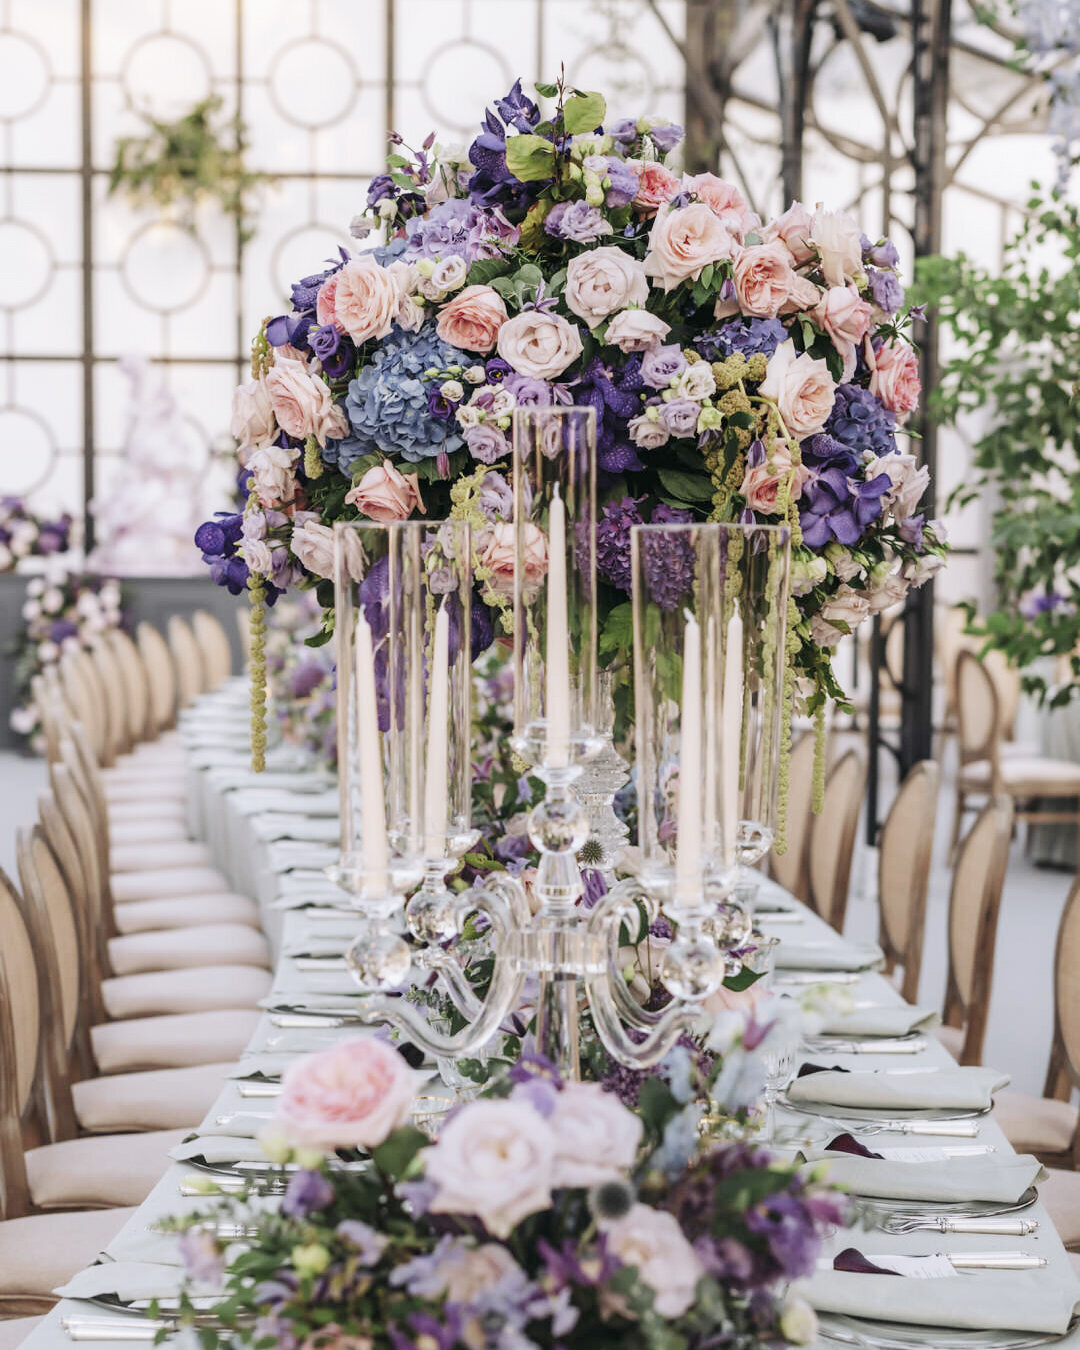 Paris Destination Wedding at Chateau de Chantilly by Alejandra Poupel Events verticale-dinner table6